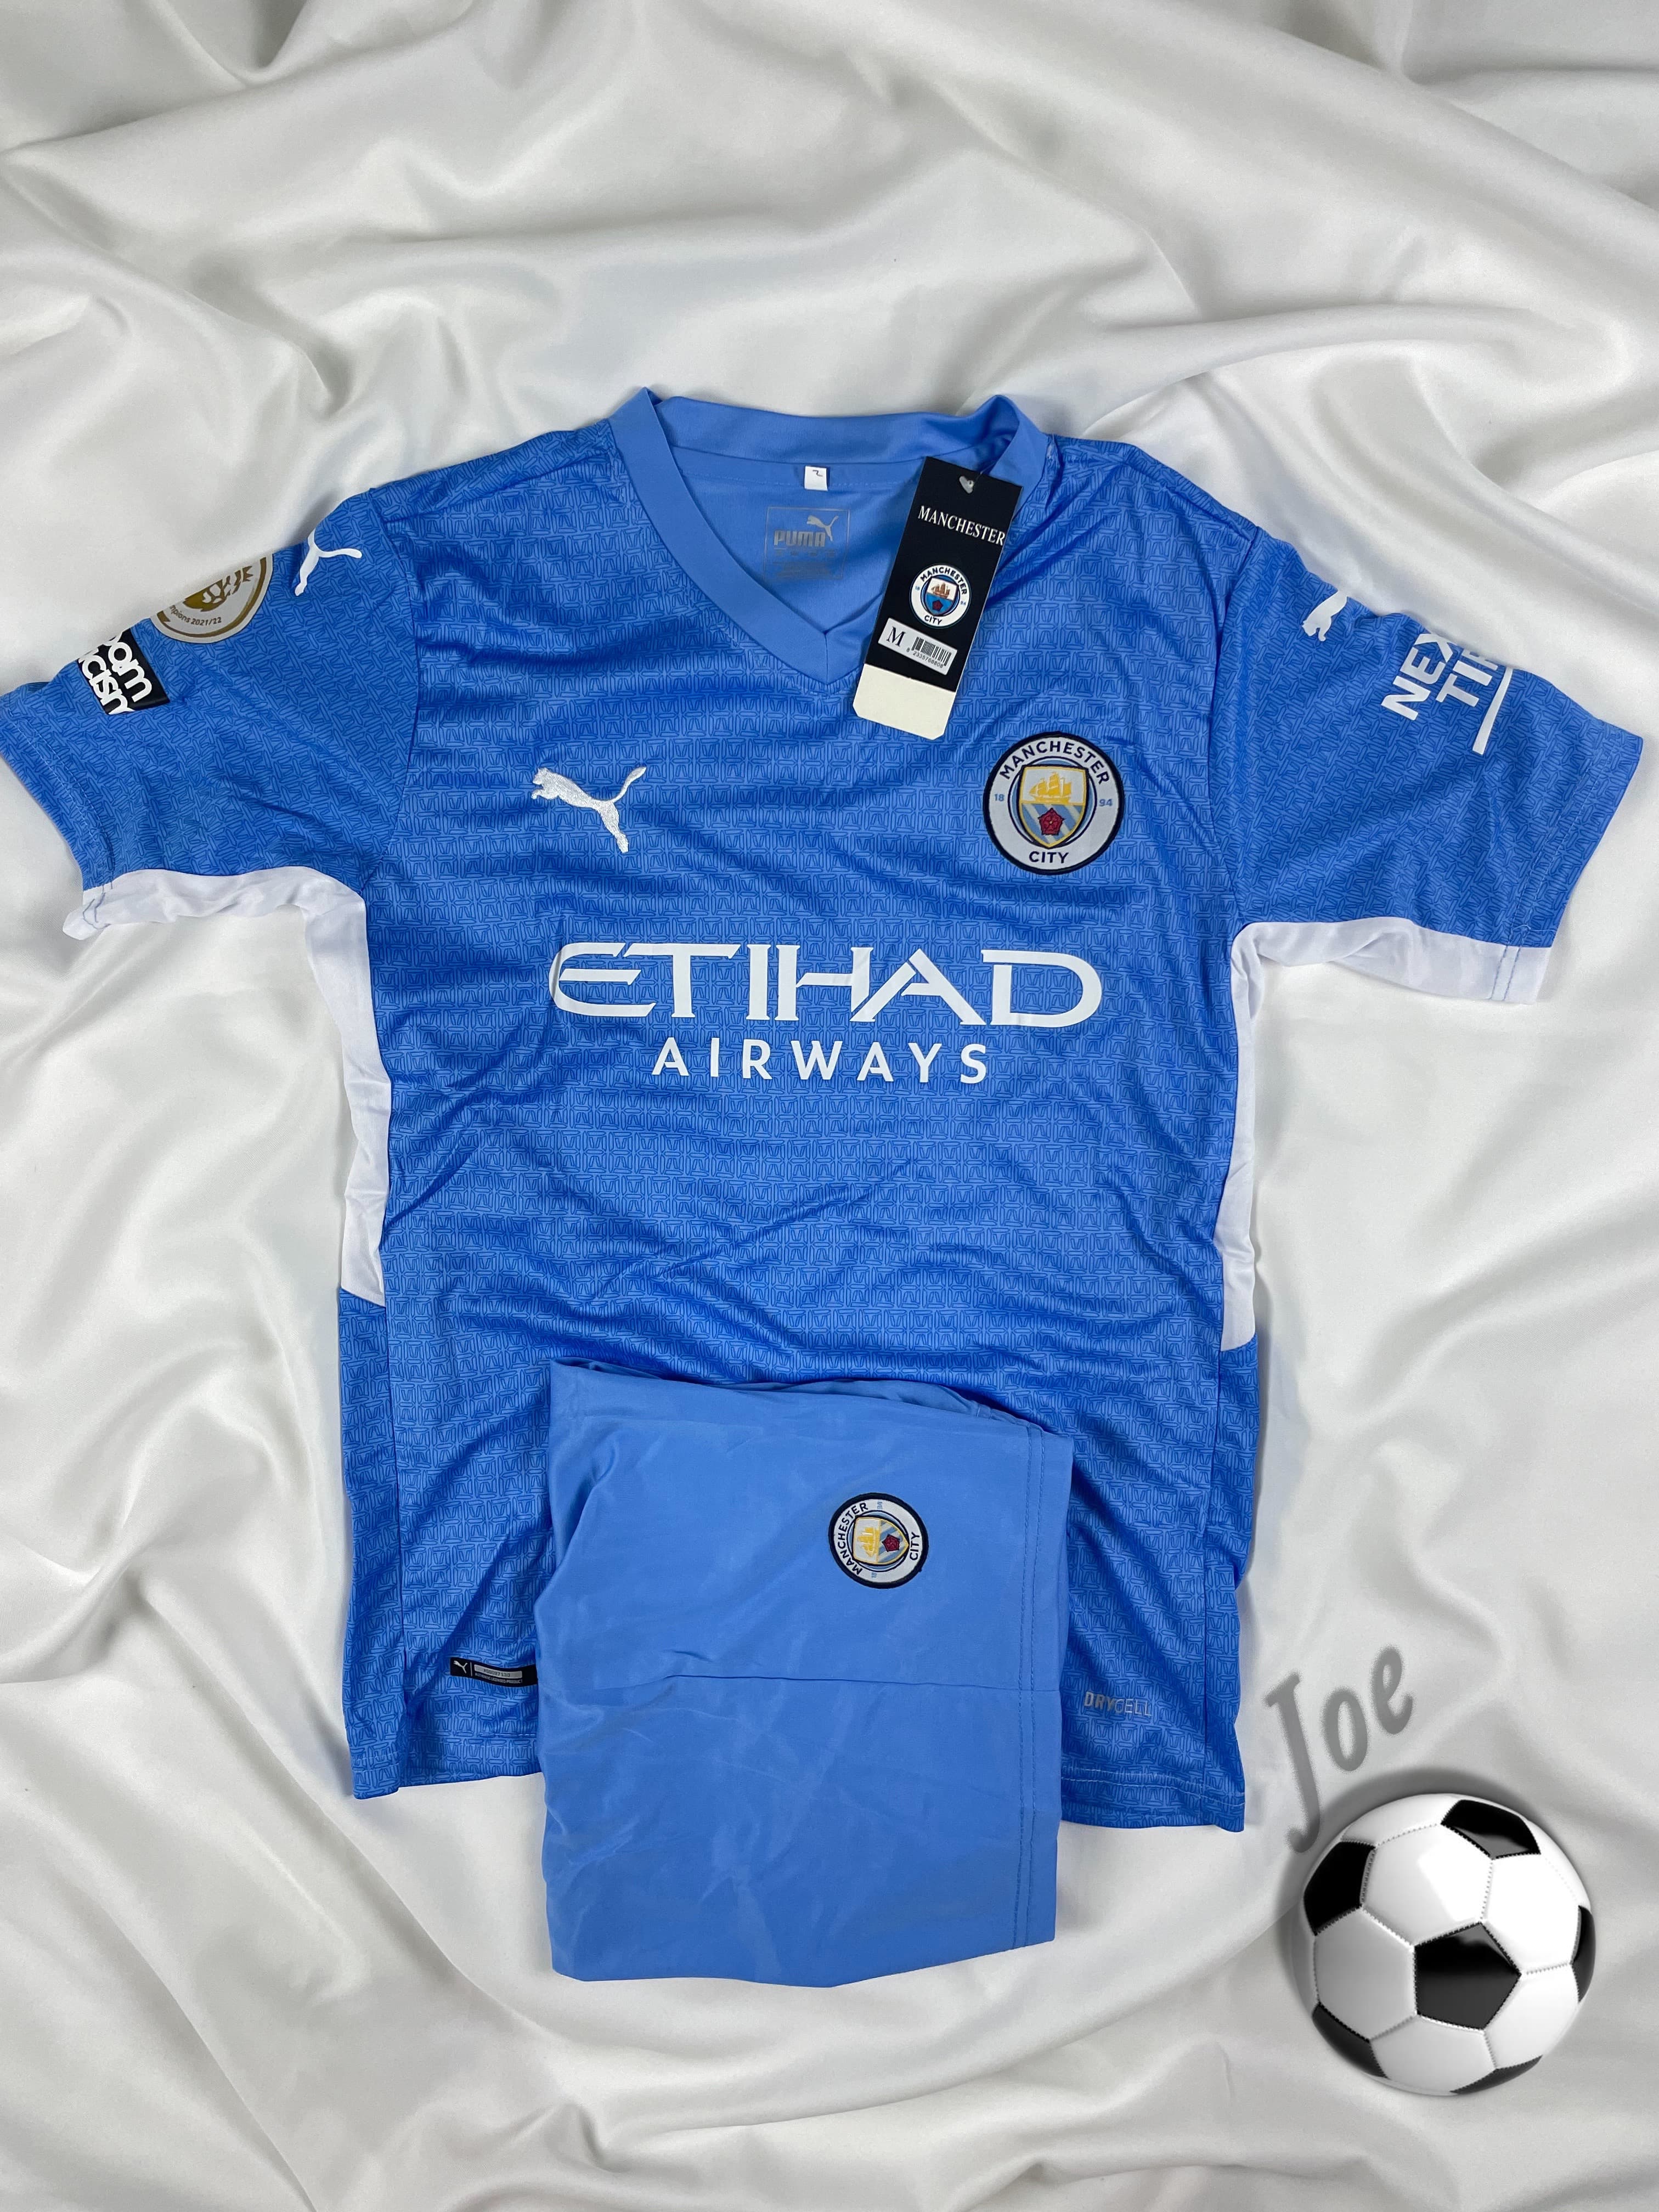 ชุดบอล Manchester City เสื้อบอลและกางเกงบอลผู้ชาย ปี 2021-2022 ใหม่ล่าสุด